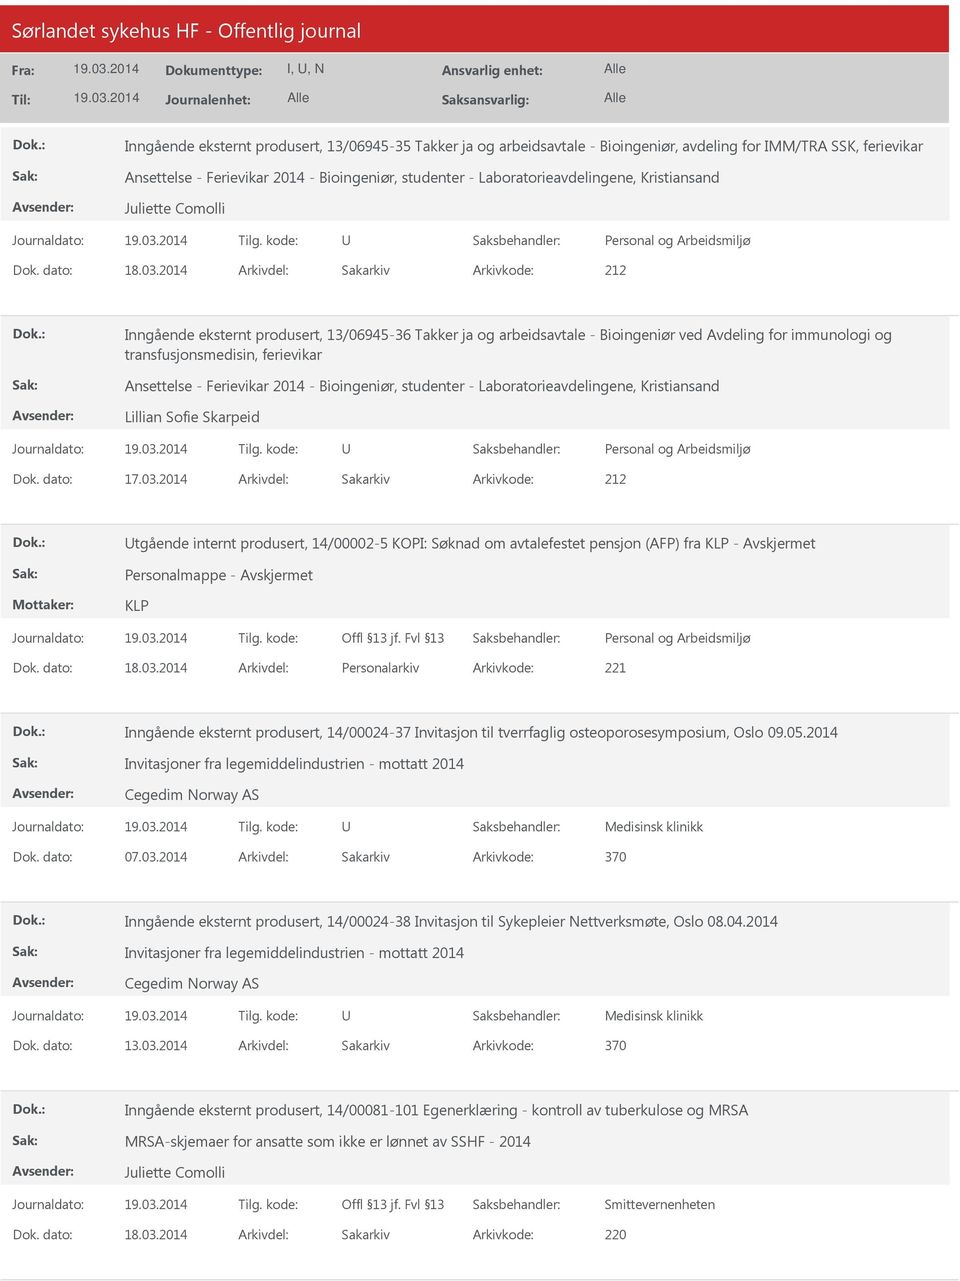 2014 Arkivdel: Sakarkiv Inngående eksternt produsert, 13/06945-36 Takker ja og arbeidsavtale - Bioingeniør ved Avdeling for immunologi og transfusjonsmedisin, Ansettelse - Ferievikar 2014 -